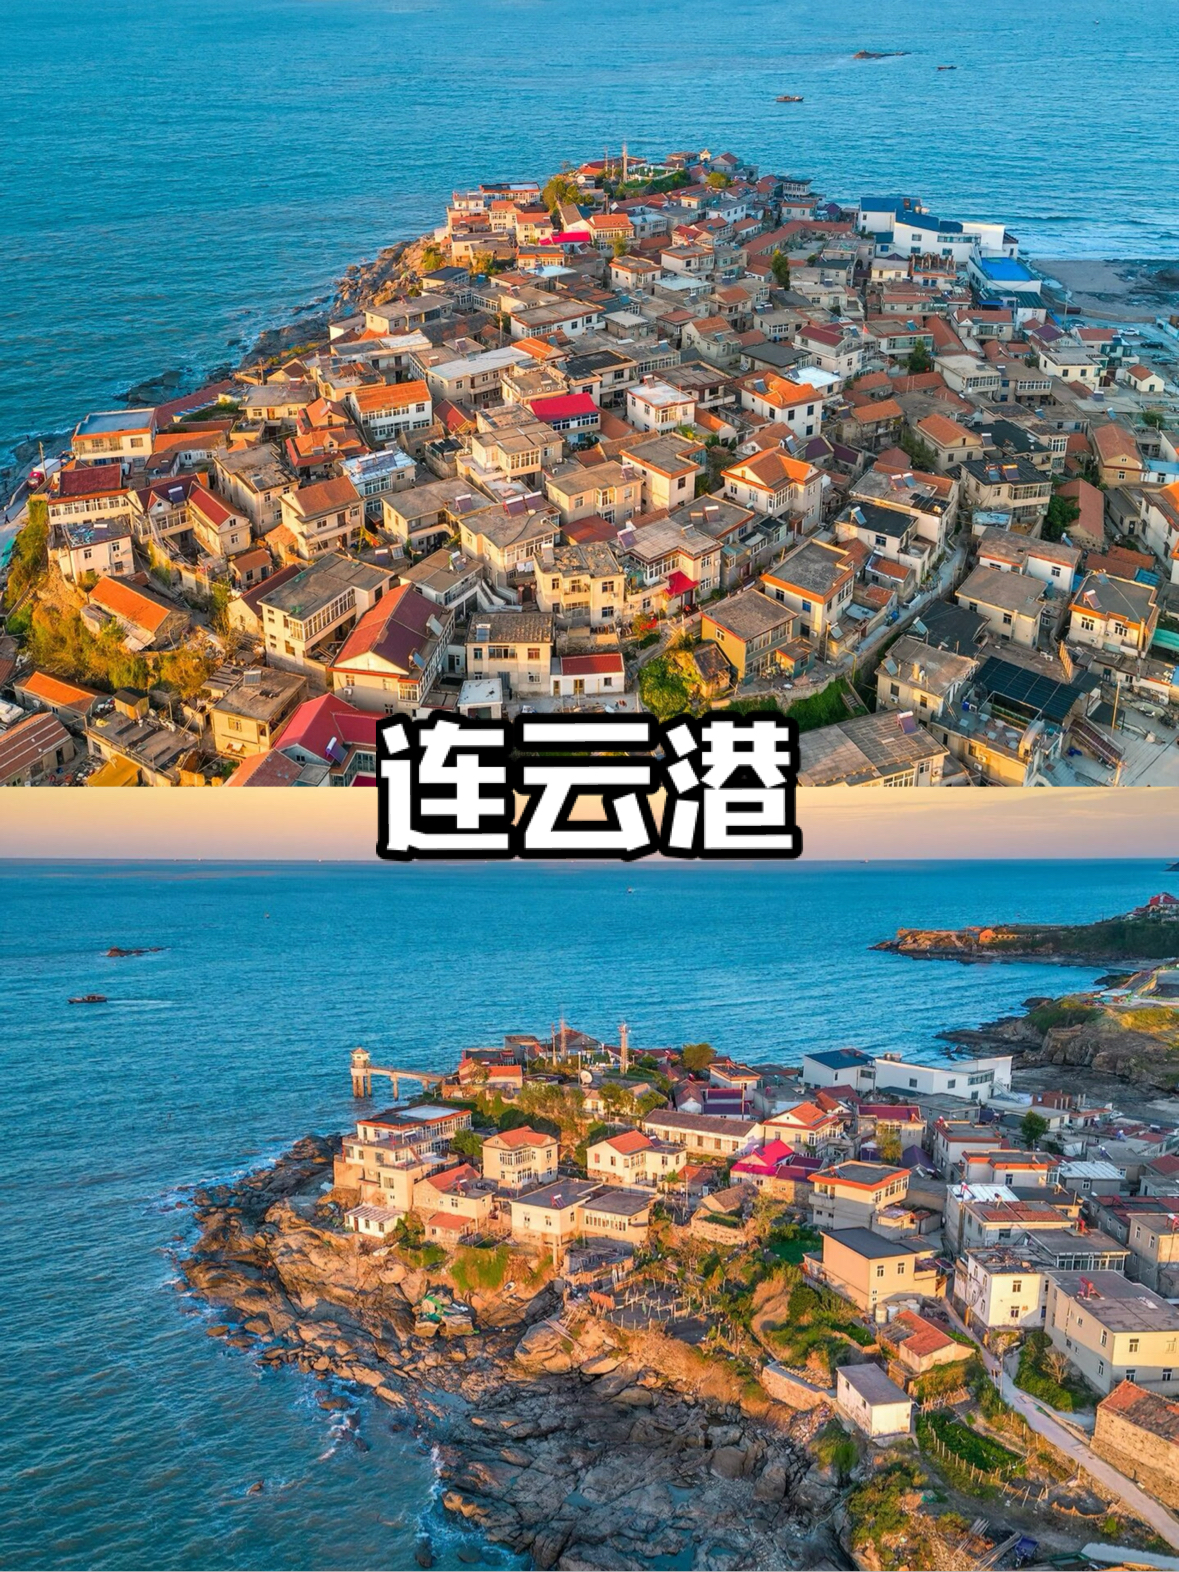 真没出国❗️是江苏被严重低估的海边小城‼️||